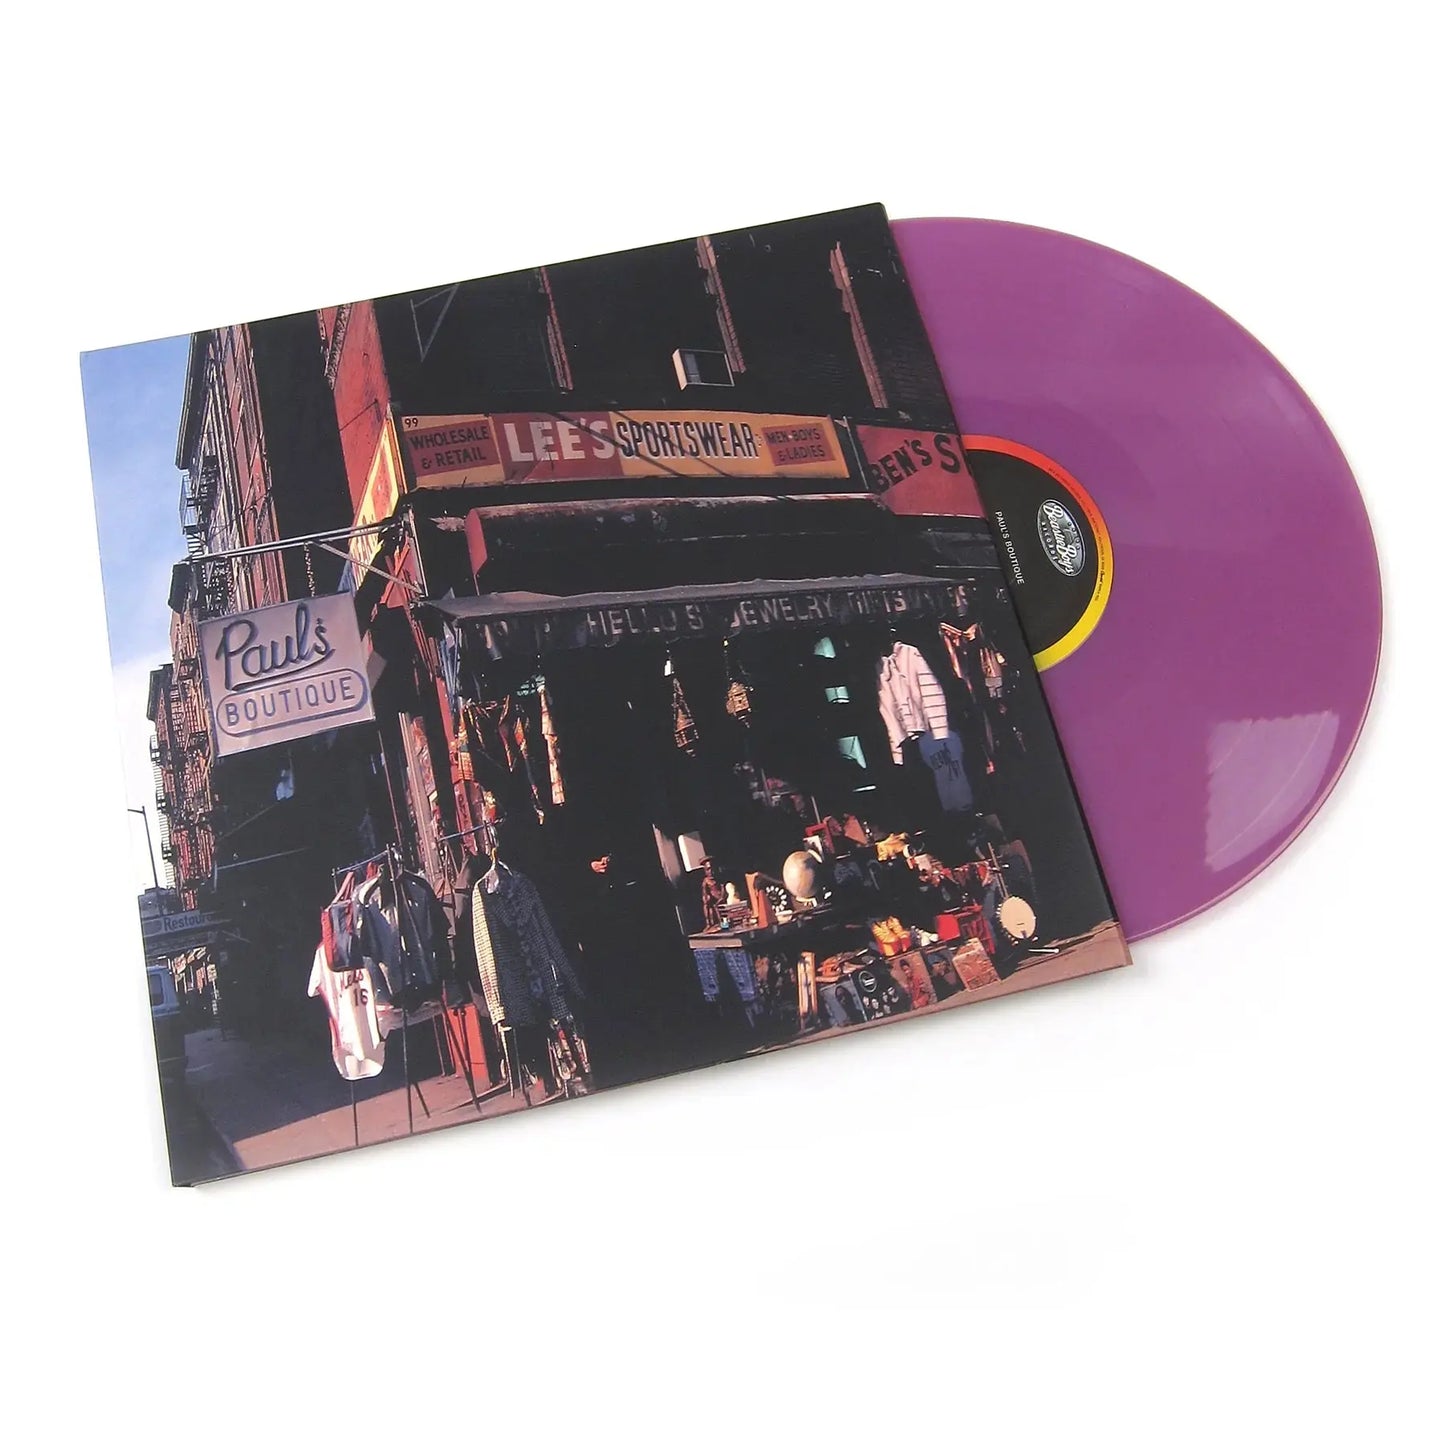 Beastie Boys - Paul's Boutique [Explicit Lyrics, Limited Edition, Clear Vinyl 2LP, Purple, 180-Gram]